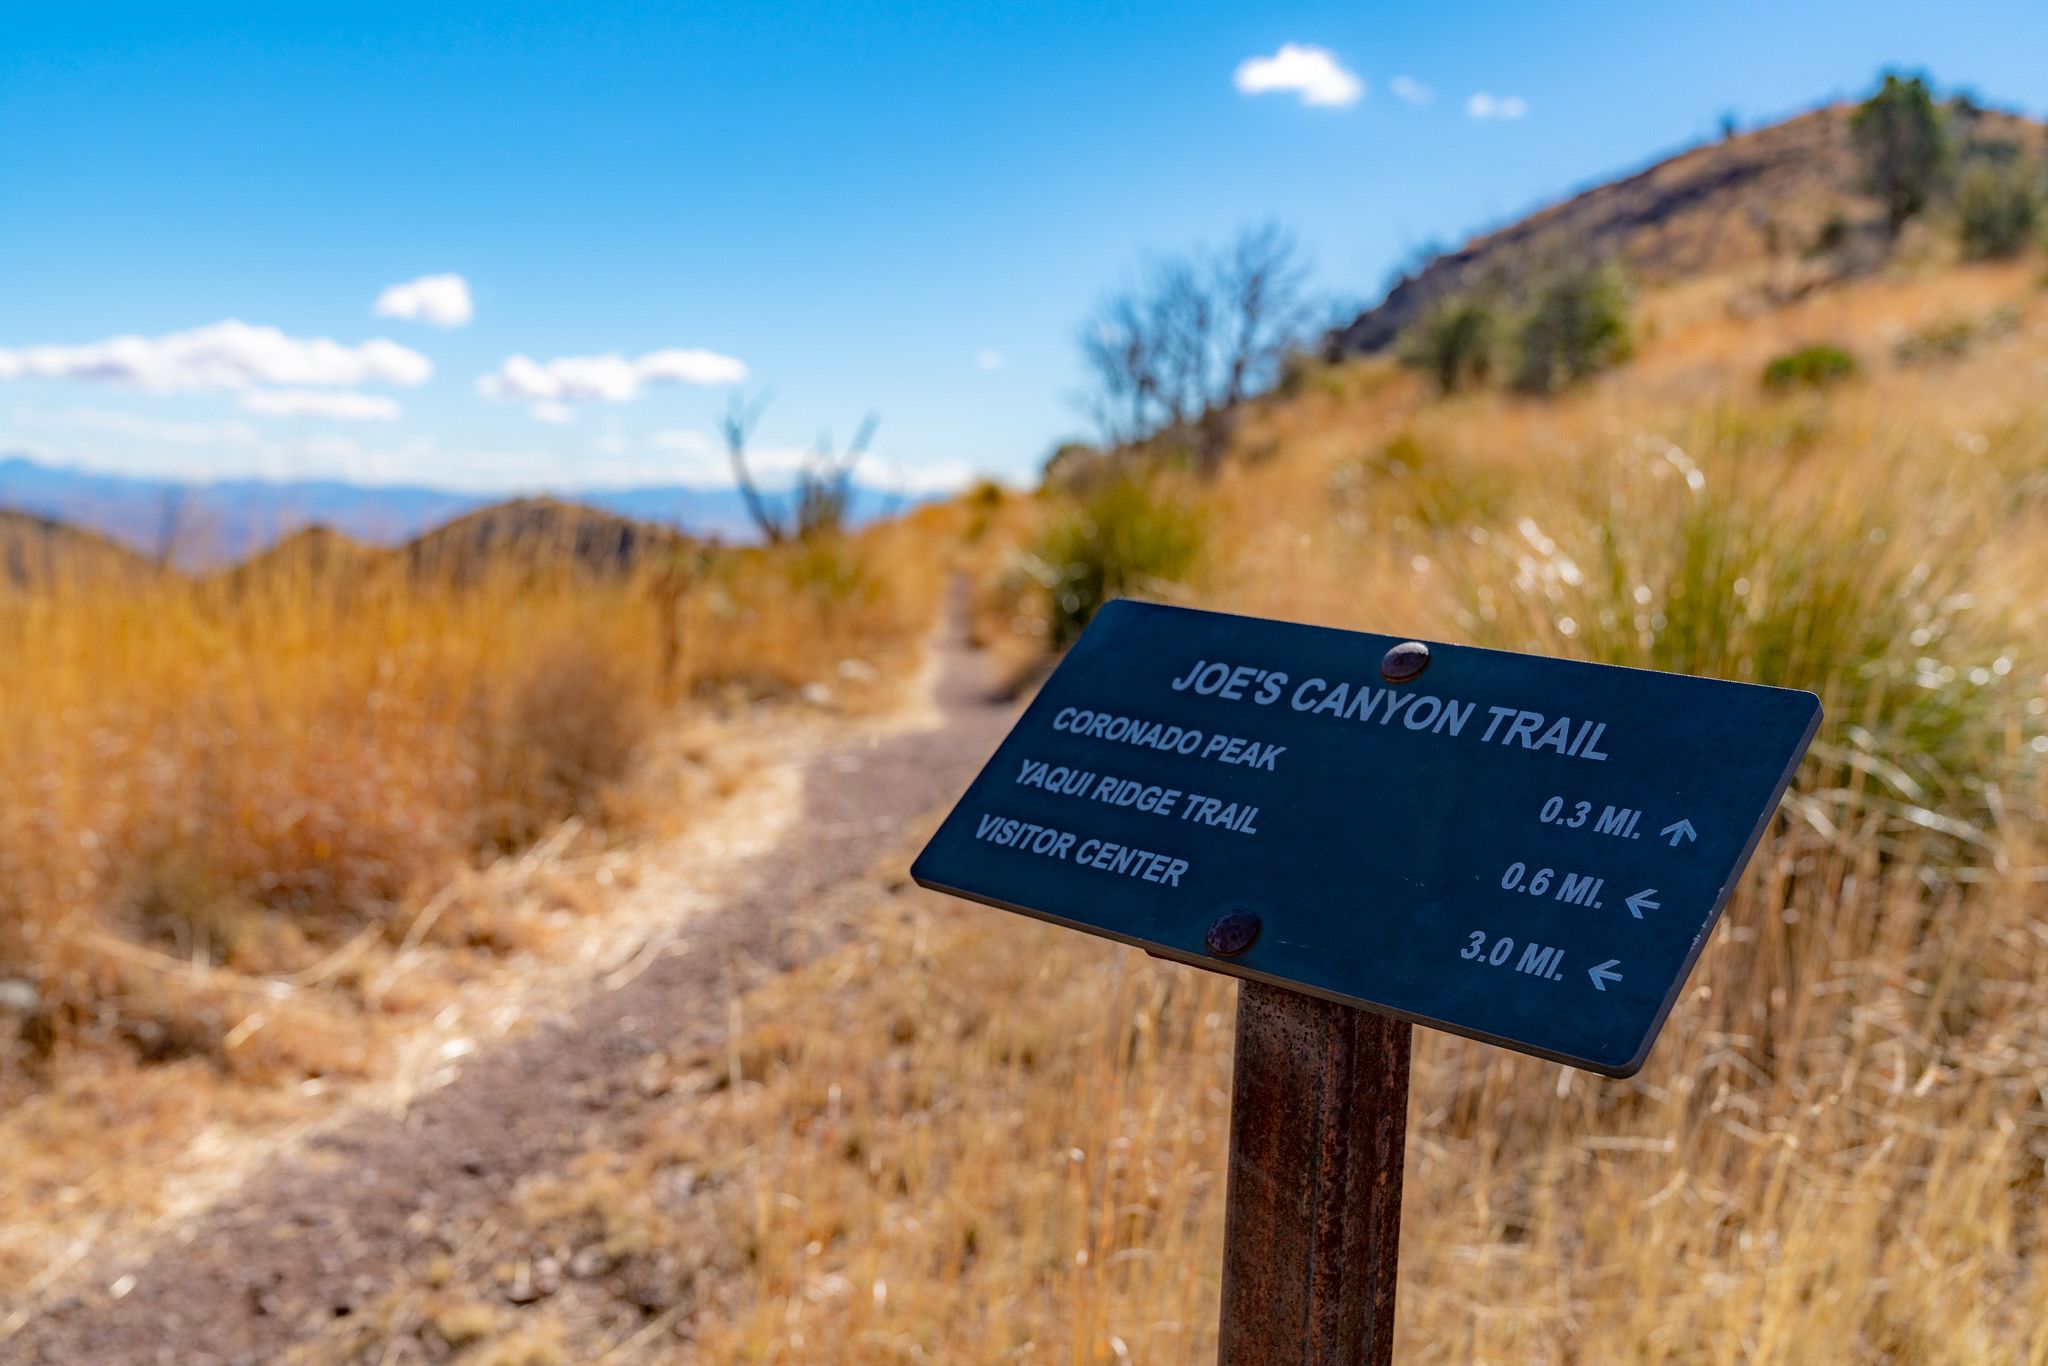 Joe's Canyon Trail